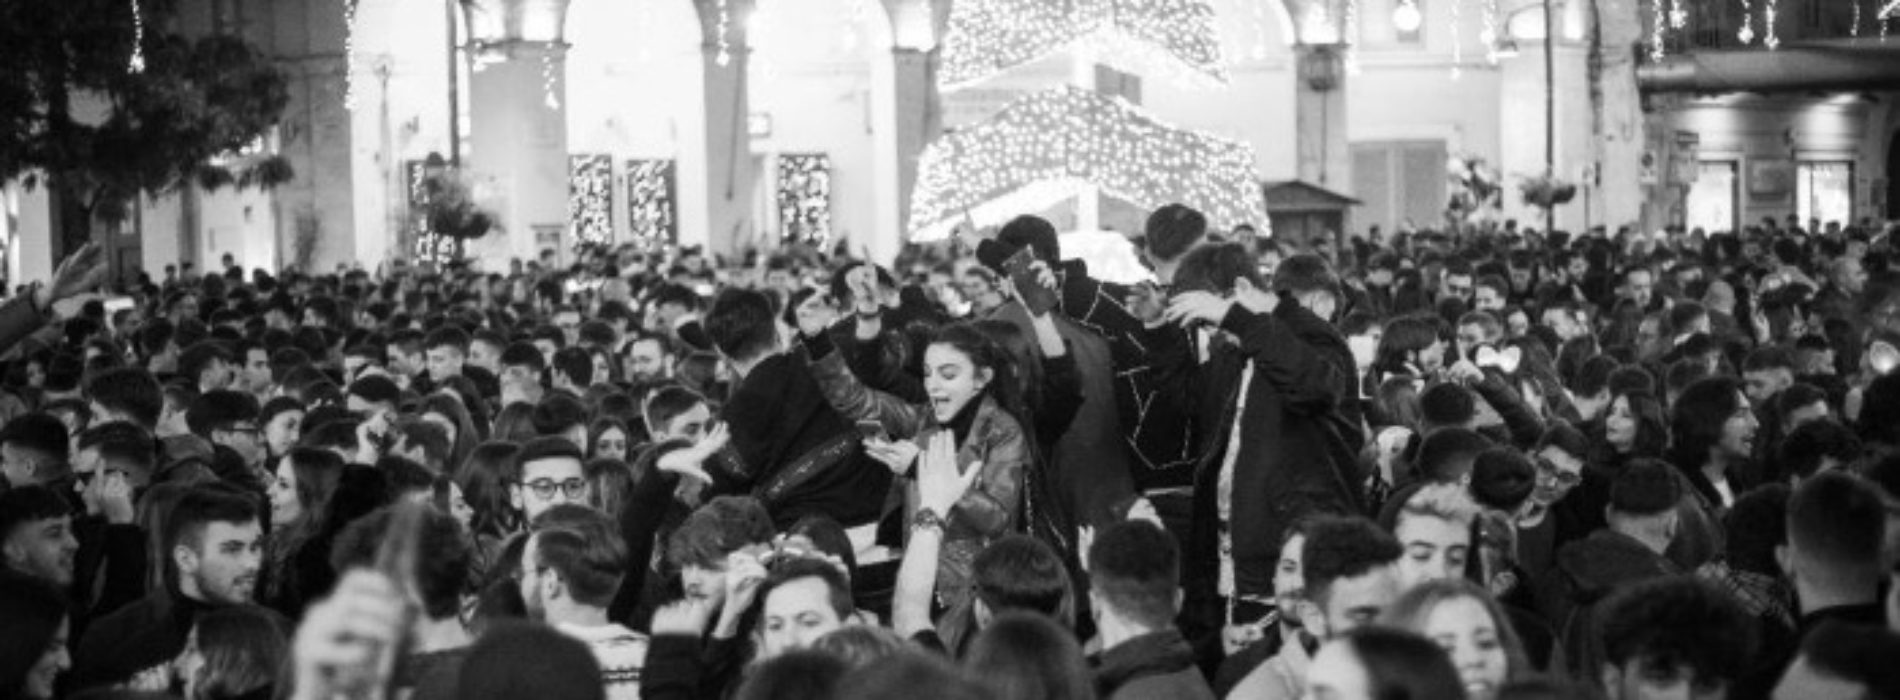 E’ vigilia di Natale, il cuore di Caserta vive il suo party diffuso